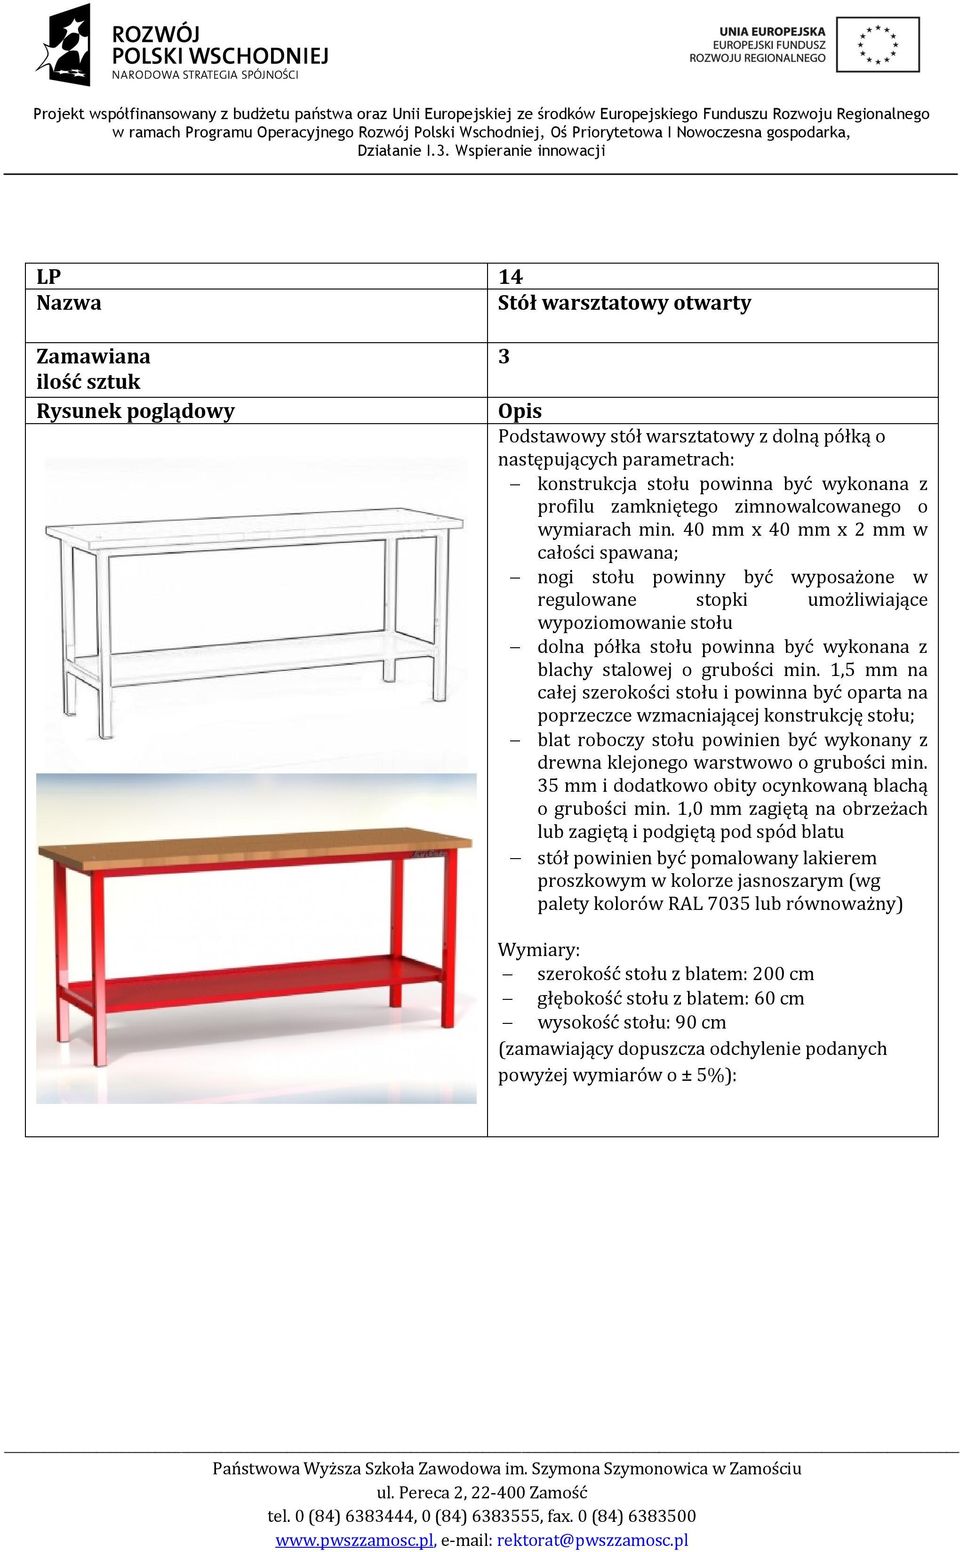 min. 1,5 mm na całej szerokości stołu i powinna być oparta na poprzeczce wzmacniającej konstrukcję stołu; blat roboczy stołu powinien być wykonany z drewna klejonego warstwowo o grubości min.